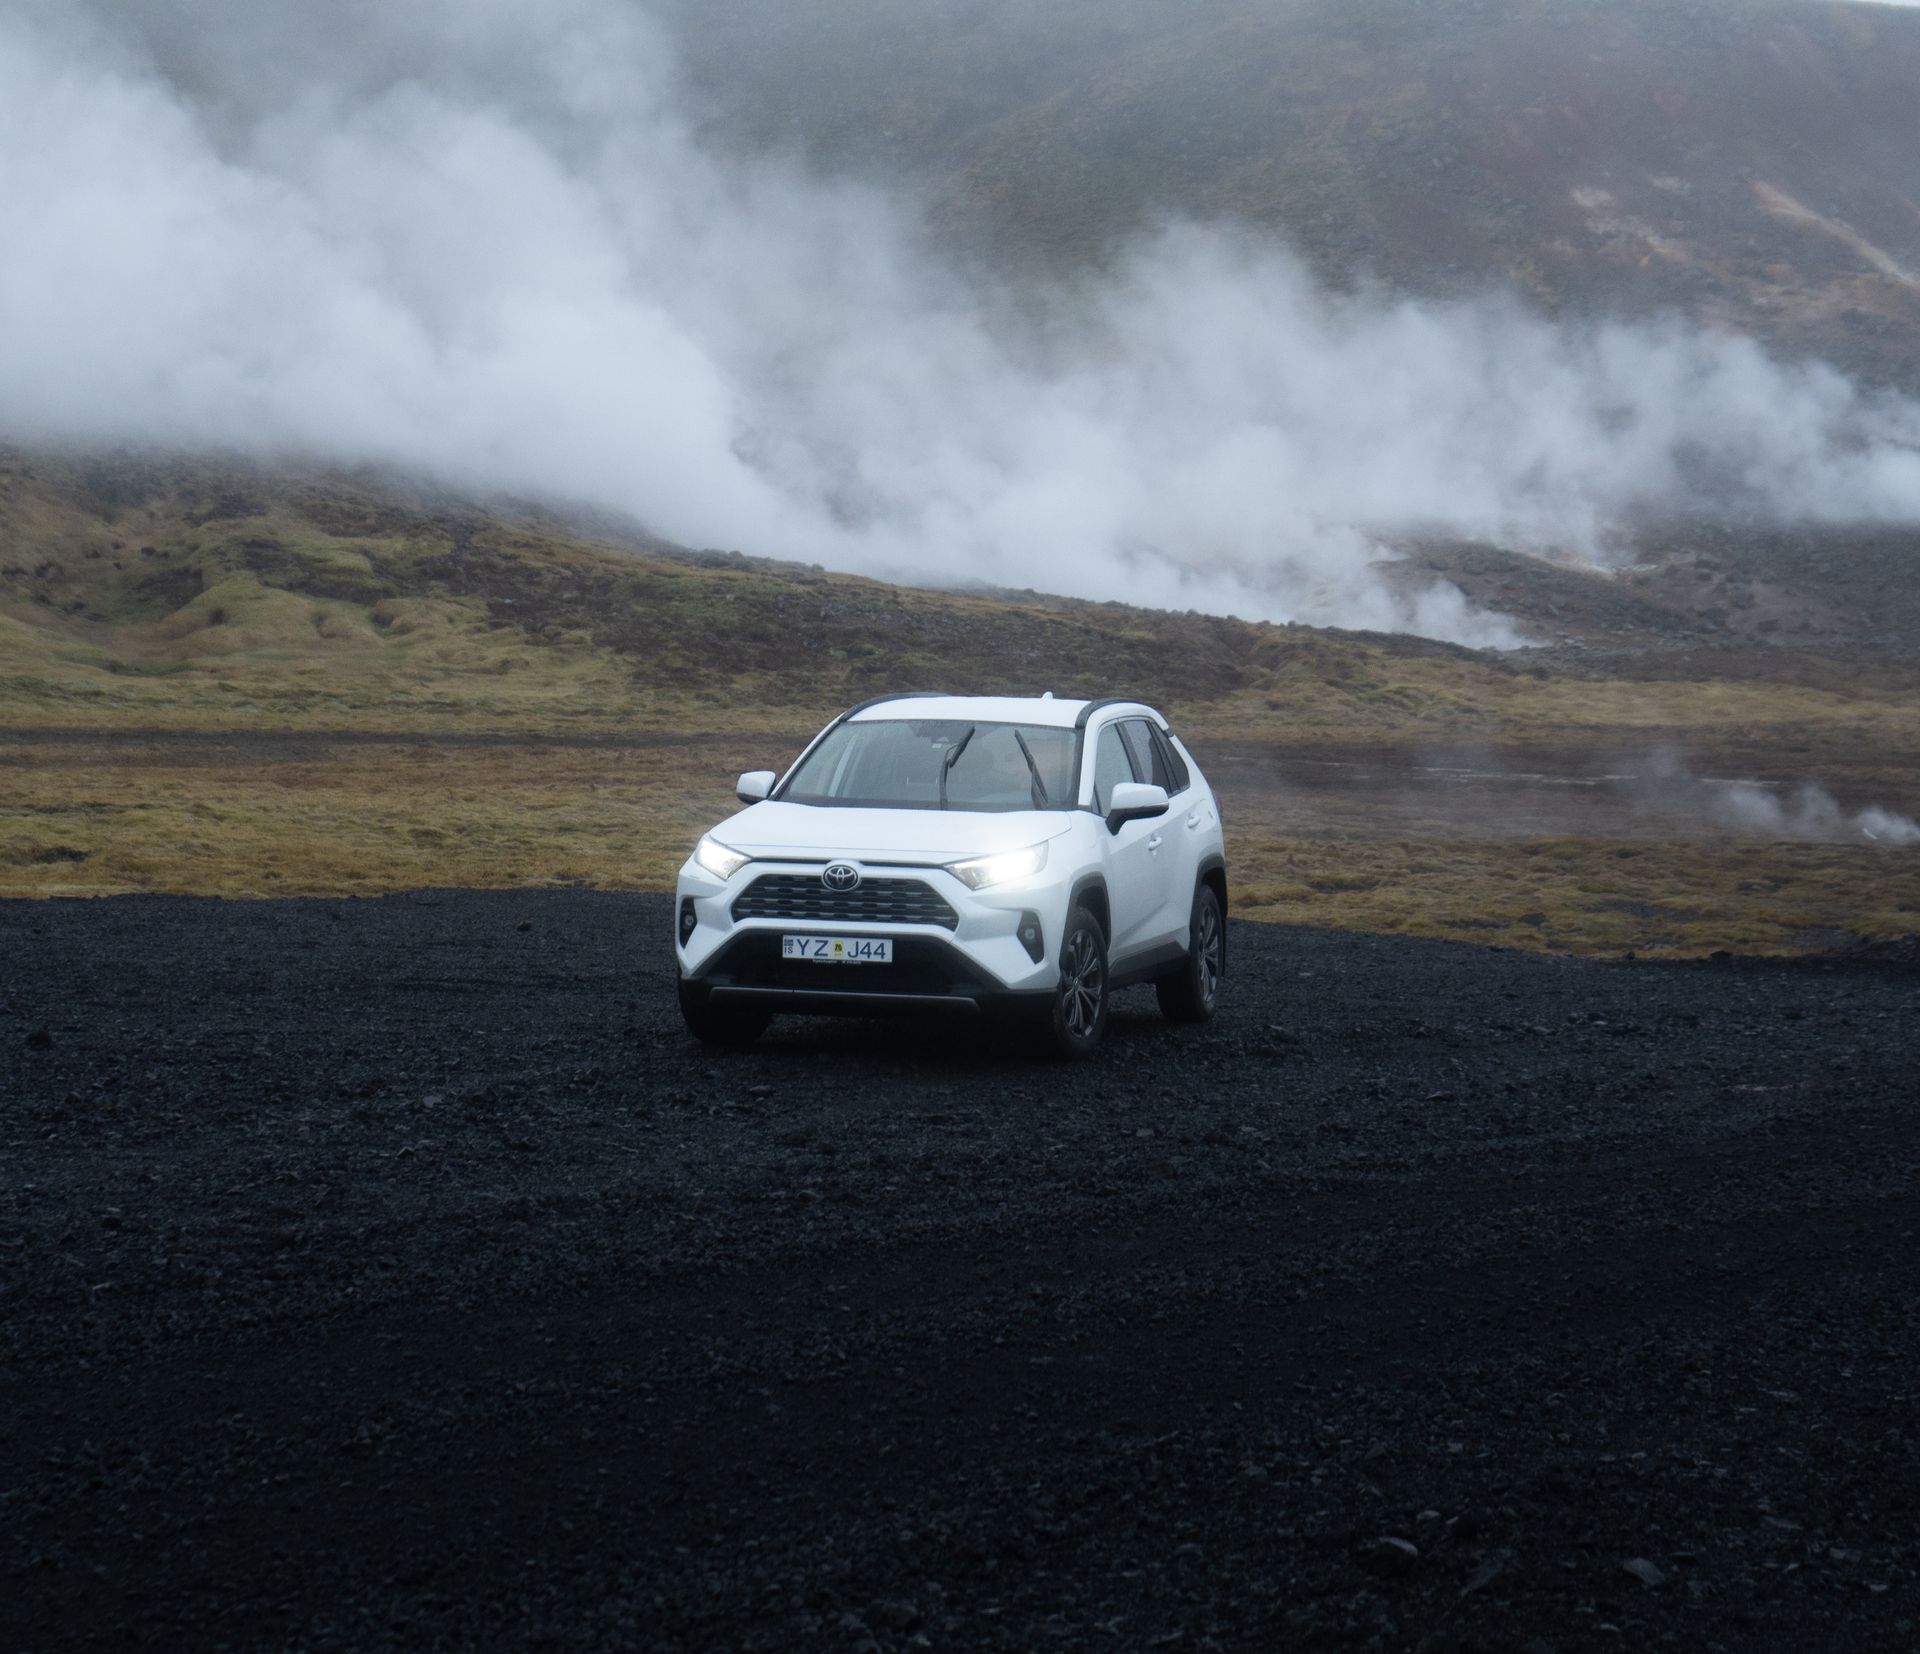 Un coche de alquiler Toyota Rav4 estacionado y listo para aventuras en Islandia.